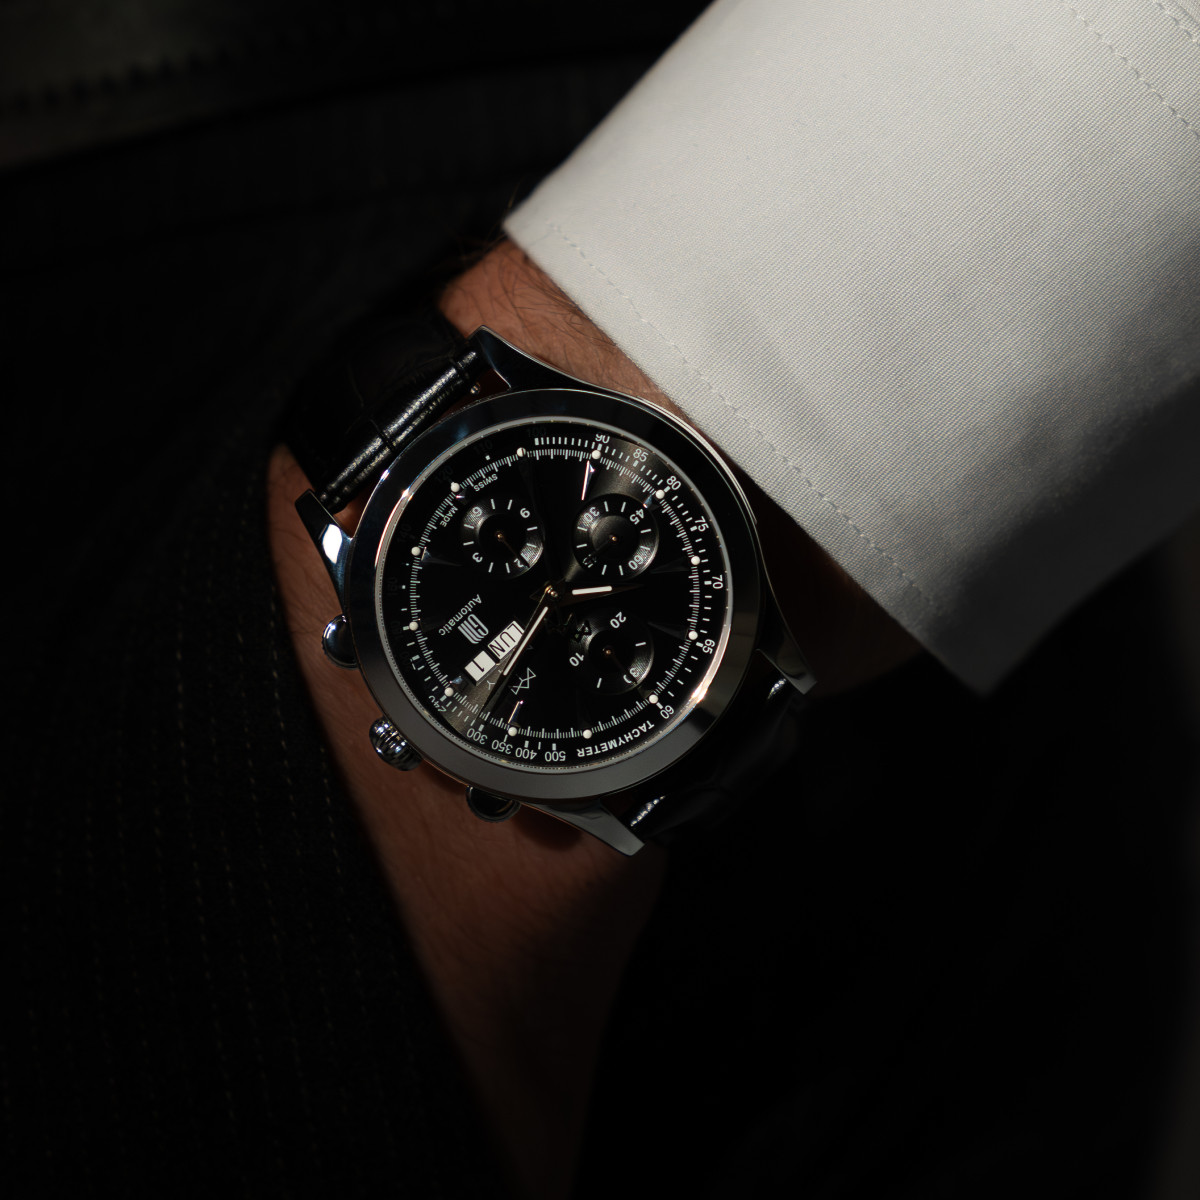 Montre MATY GM automatique chronographe cadran noir bracelet cuir noir - vue porté 1